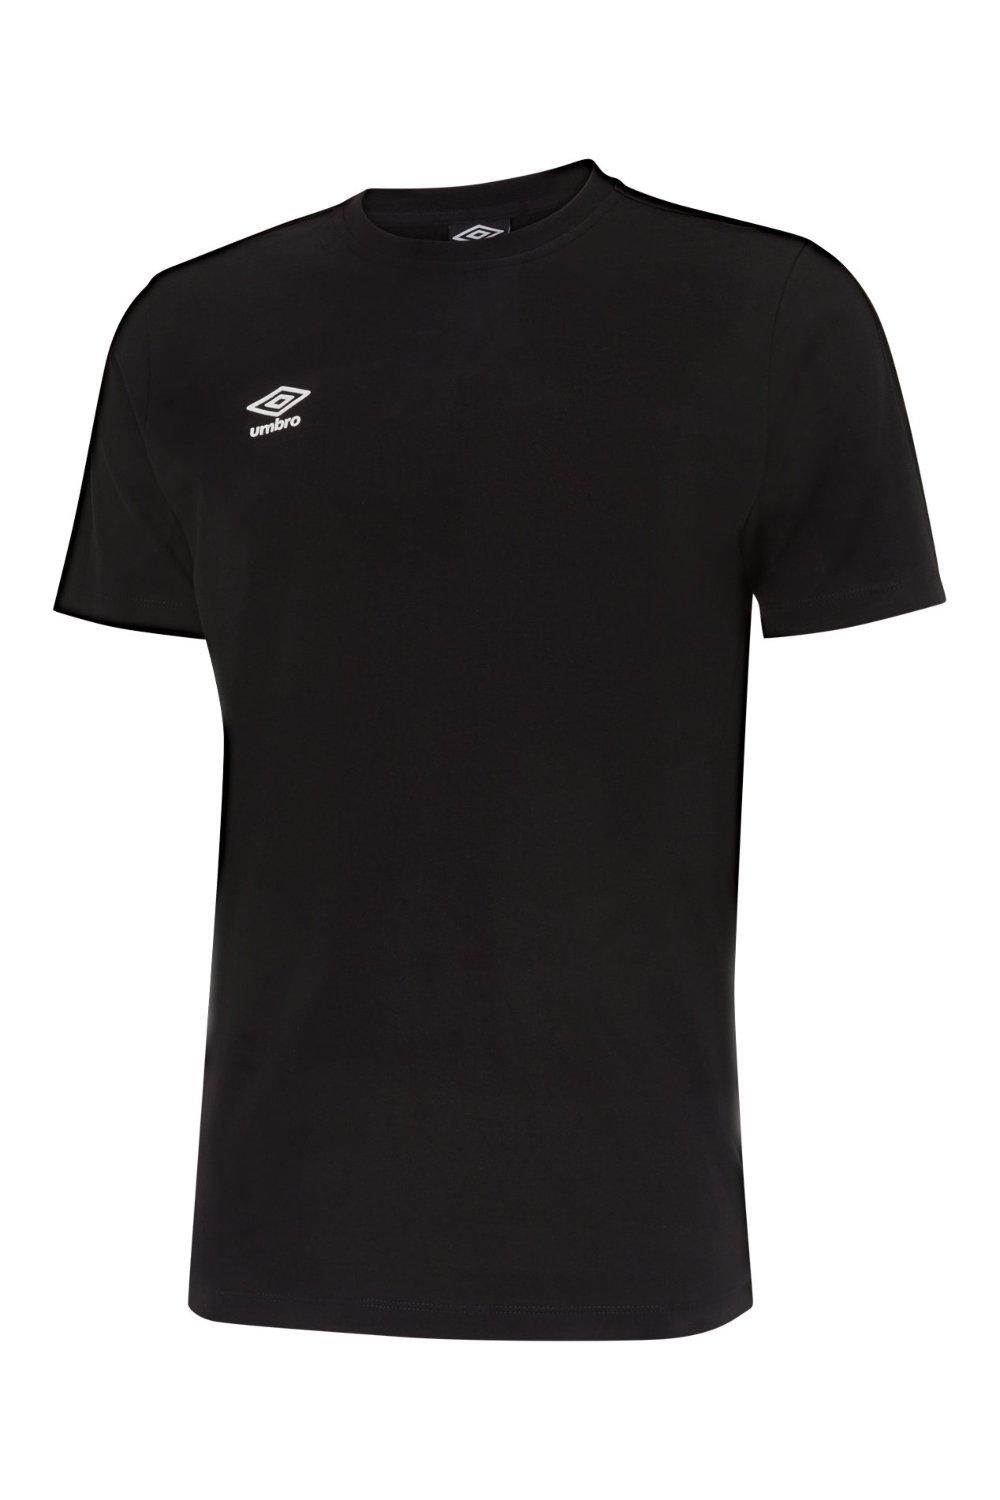 Футболка Pro с лентой Umbro, черный футболка umbro футболка тренировочная umbro pro training tee 65844u kmu размер m серый